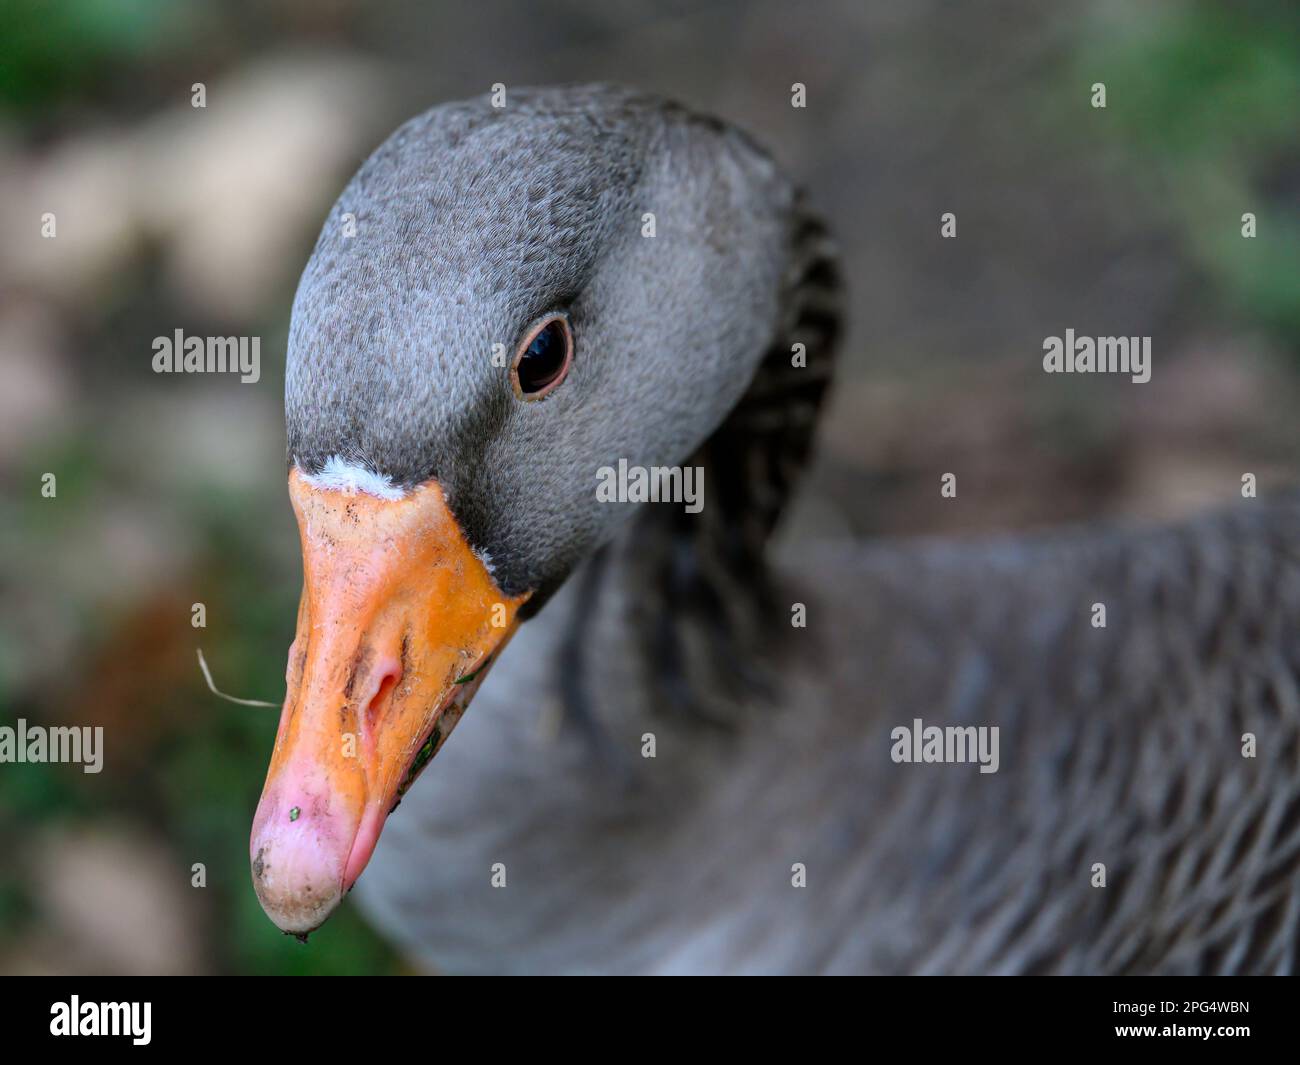 Greylag-Gans sieht nach links aus. Nahaufnahme des grauen Kopfes des Vogels mit orangefarbenem Schnabel. Greylag Goose (Anser anser) in Beckenham, Kent, Großbritannien. Stockfoto